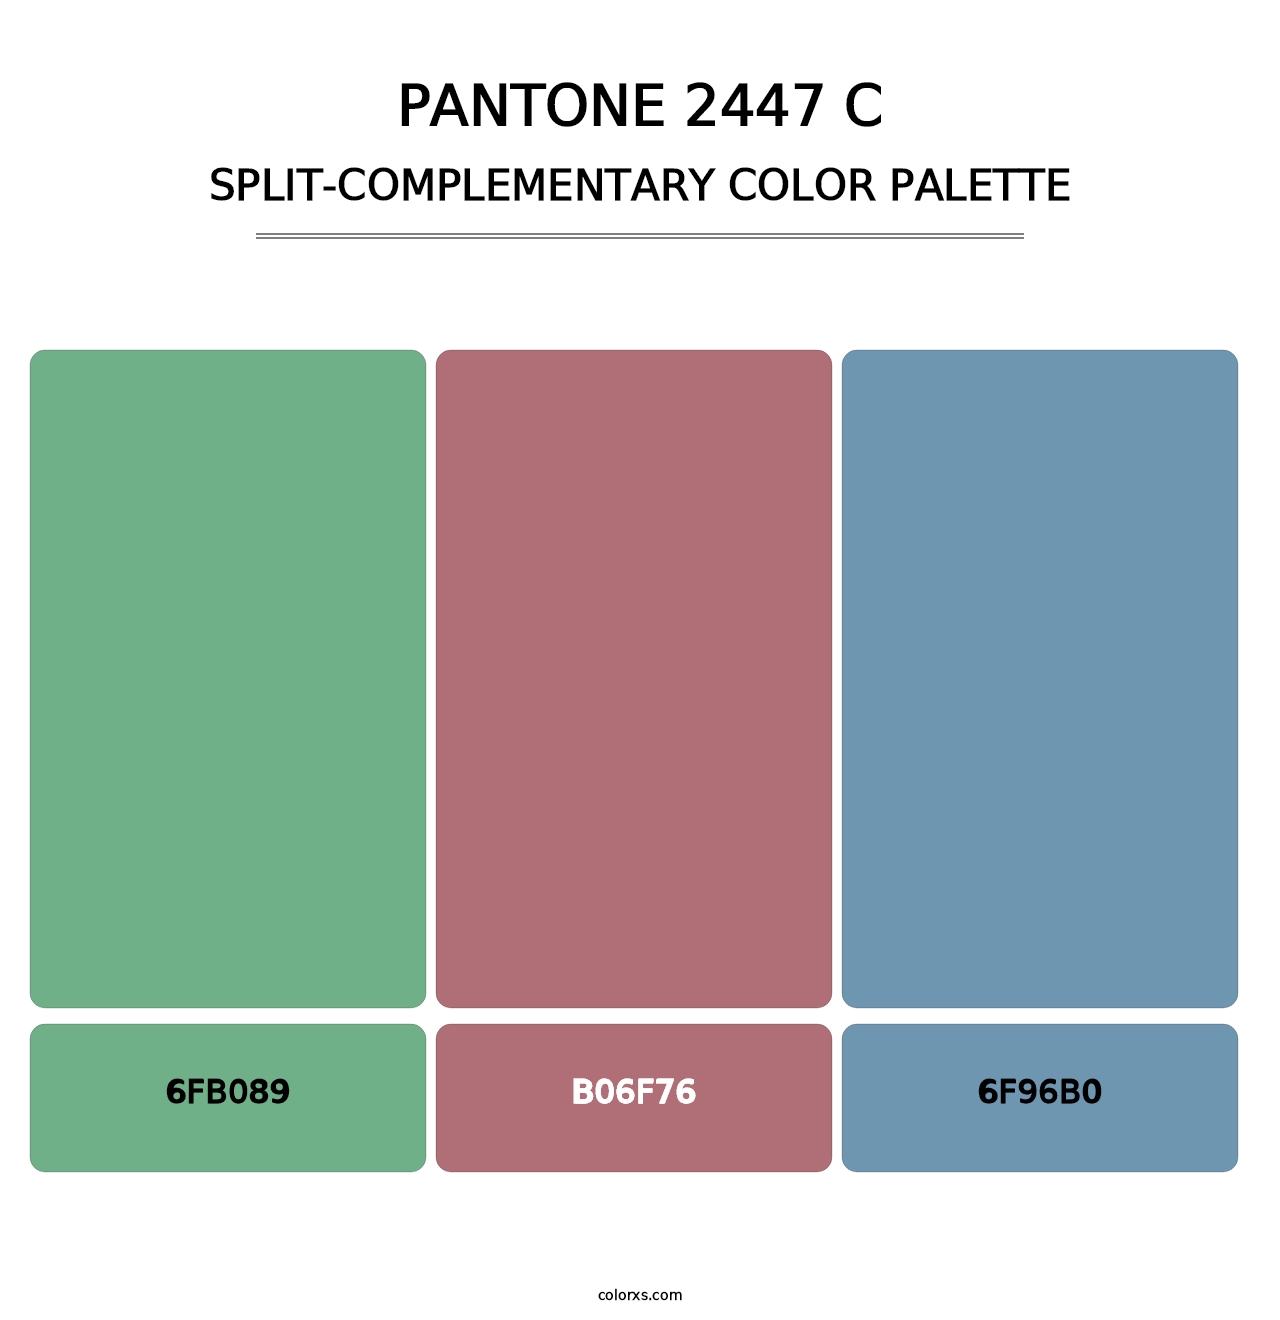 PANTONE 2447 C - Split-Complementary Color Palette